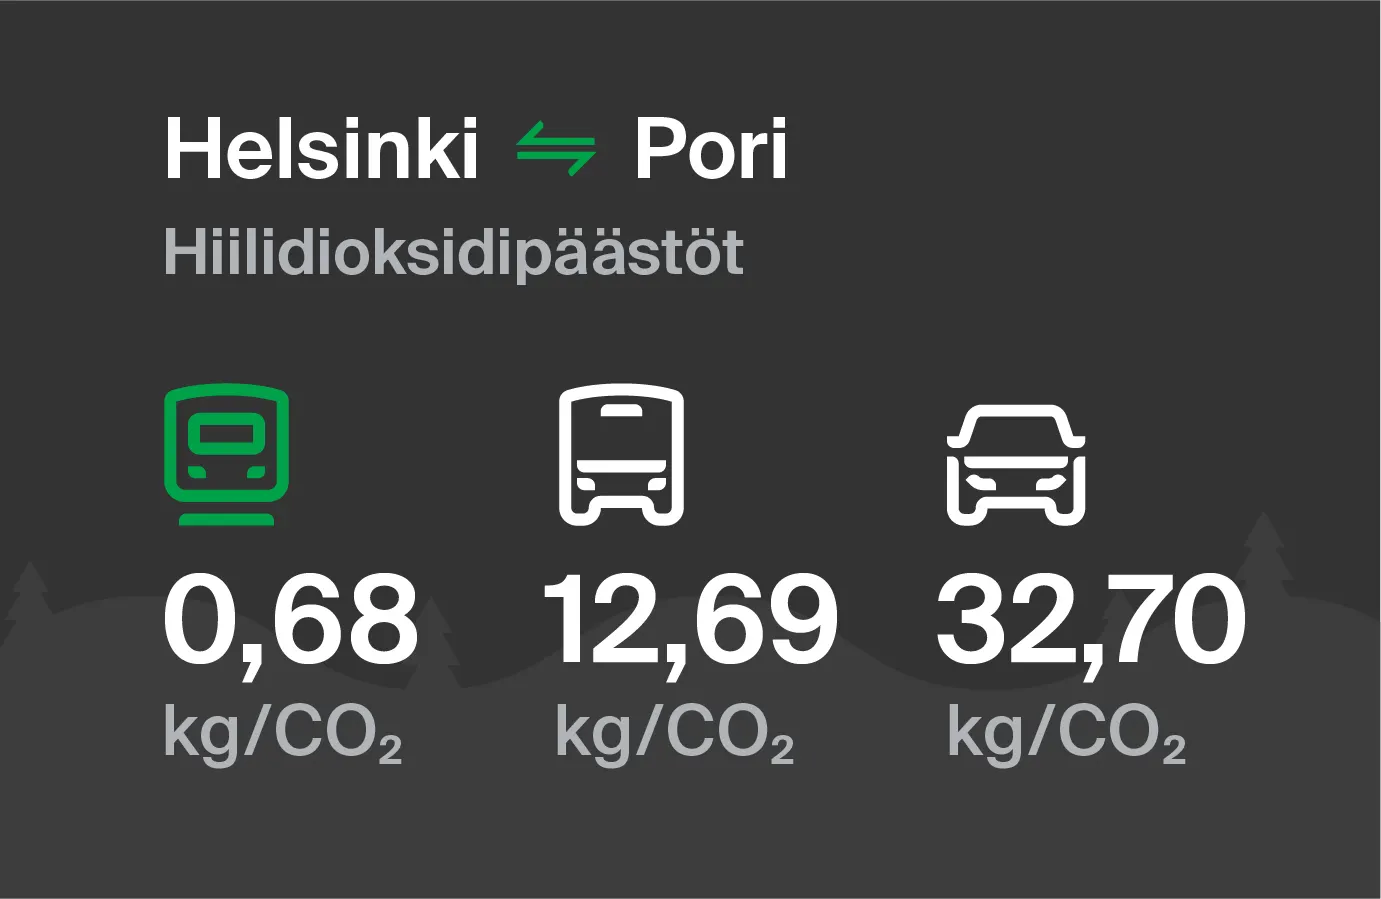 Koldioxidutsläpp från Helsingfors till Björneborg genom olika transportsätt: med tåg 0,68 kg/CO2, med buss 12,69 kg/CO2 och med bil 32,70 kg/CO2.